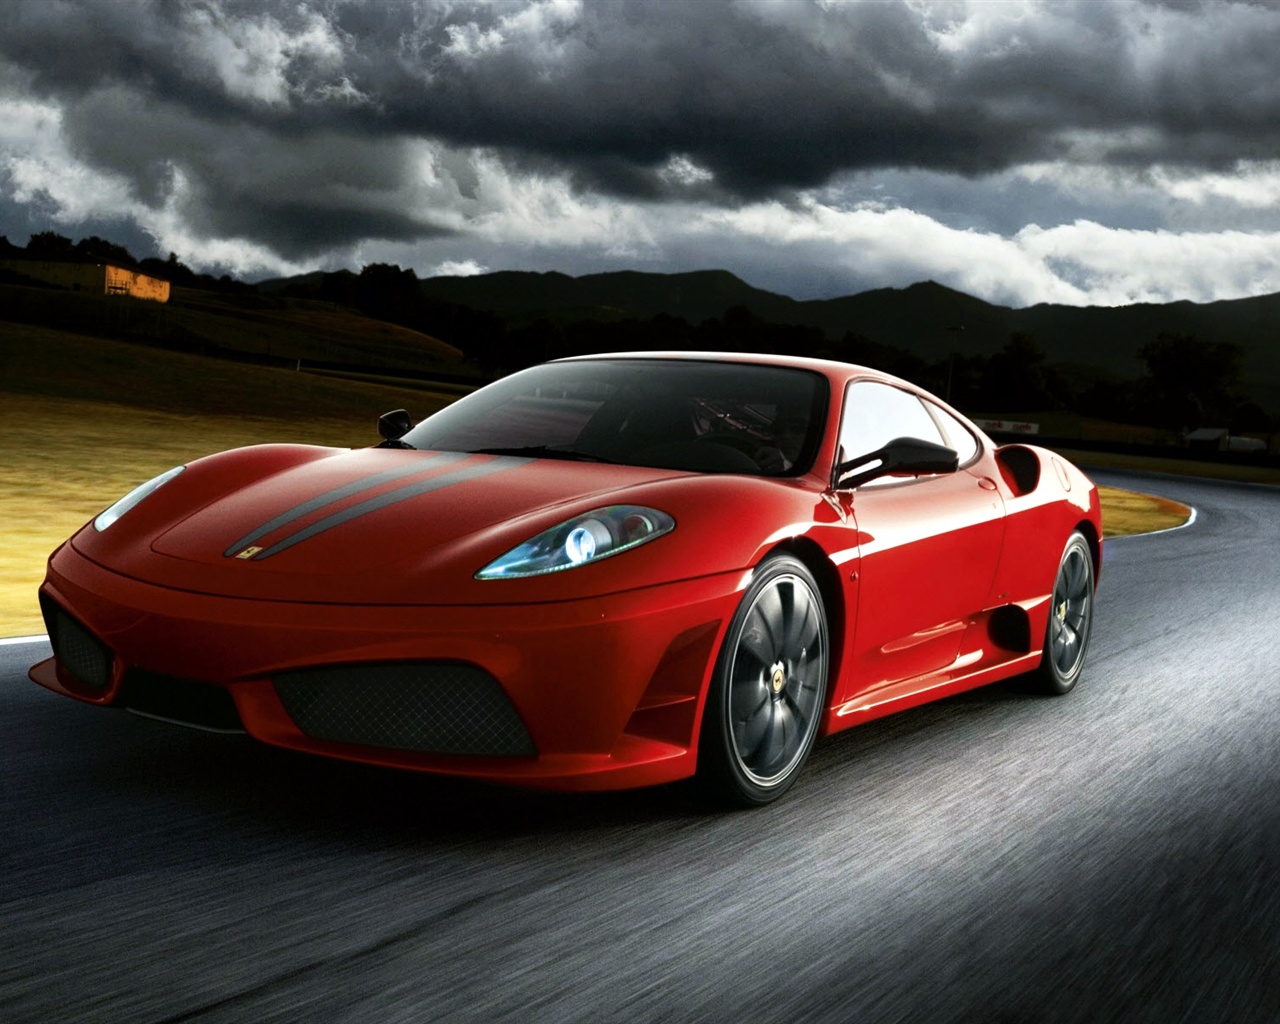 Ferrari supercar Wallpaper 1280x1024 resolution wallpaper download 1280x1024